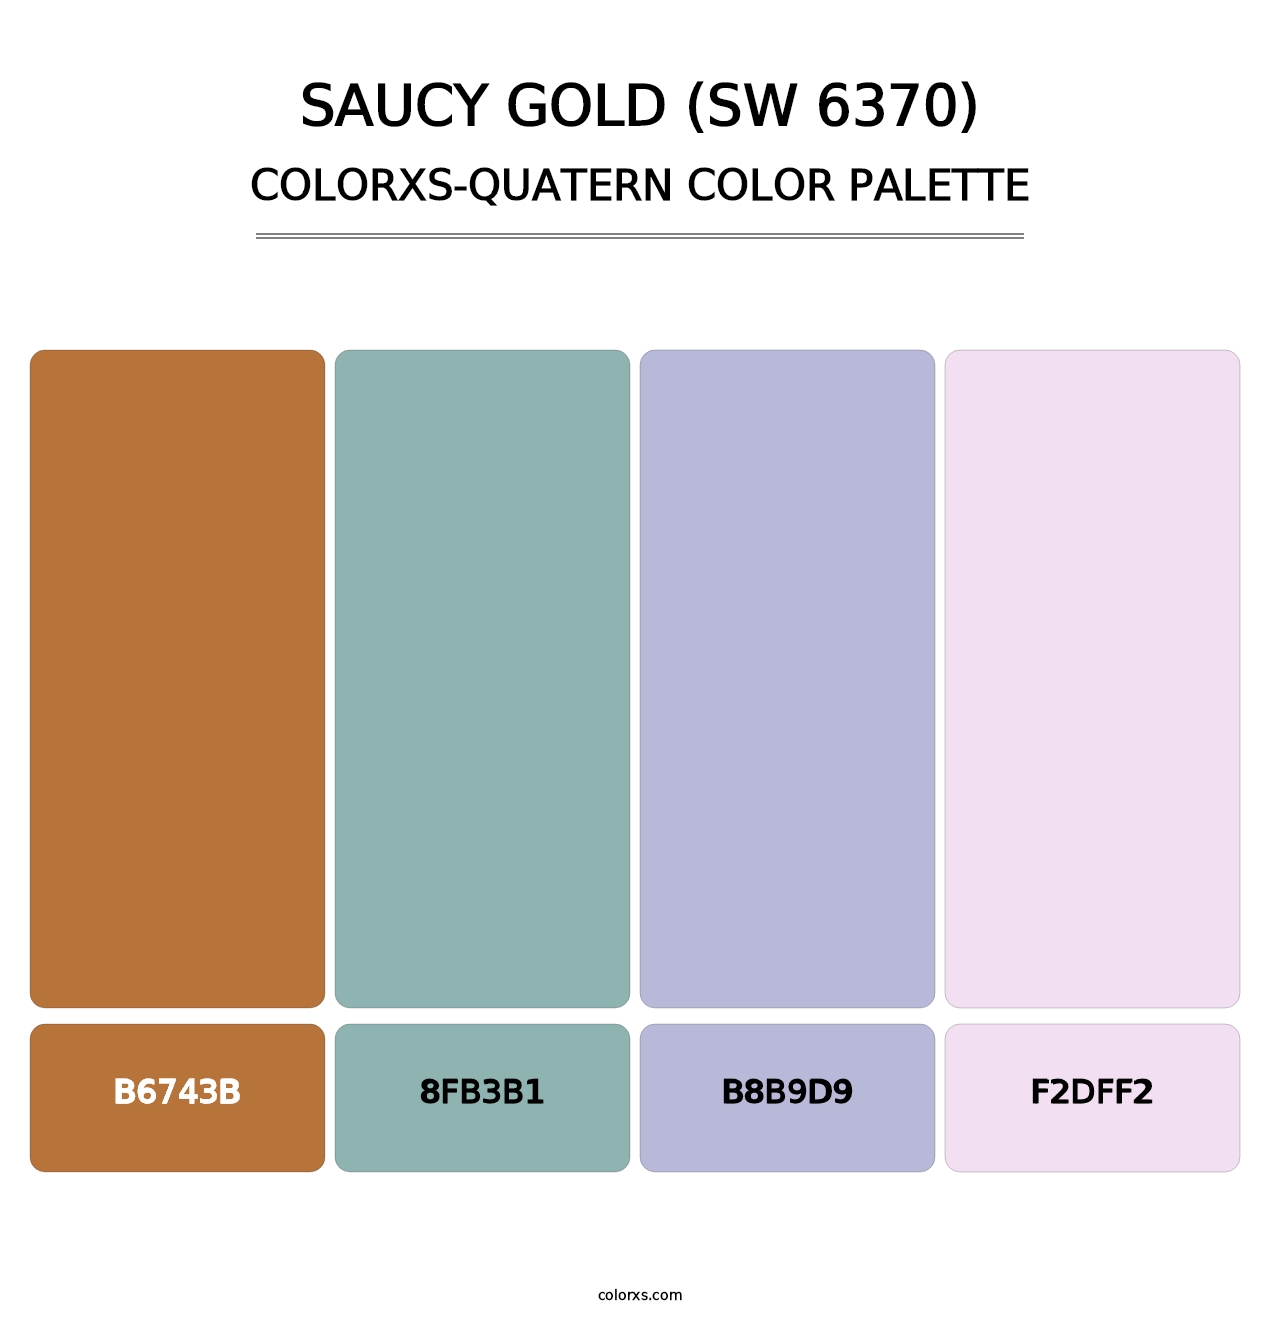 Saucy Gold (SW 6370) - Colorxs Quatern Palette